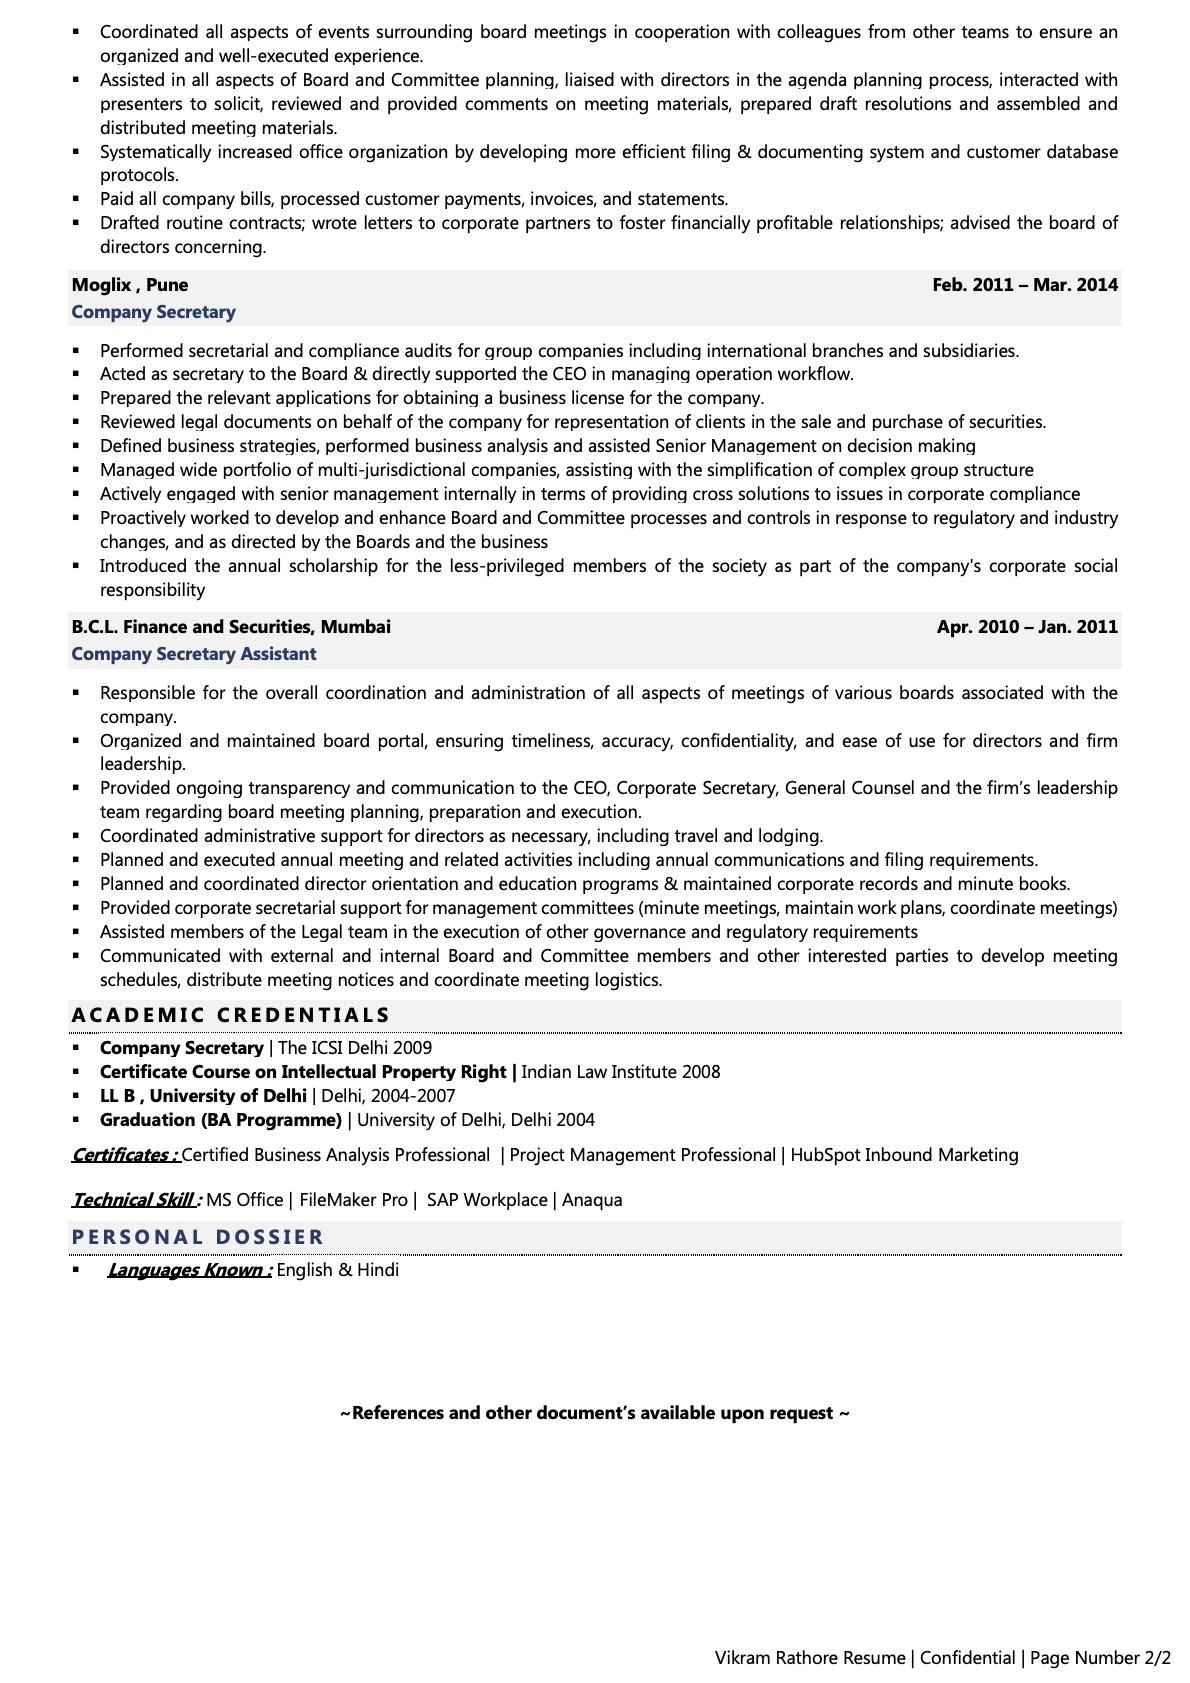 resume for executive secretary